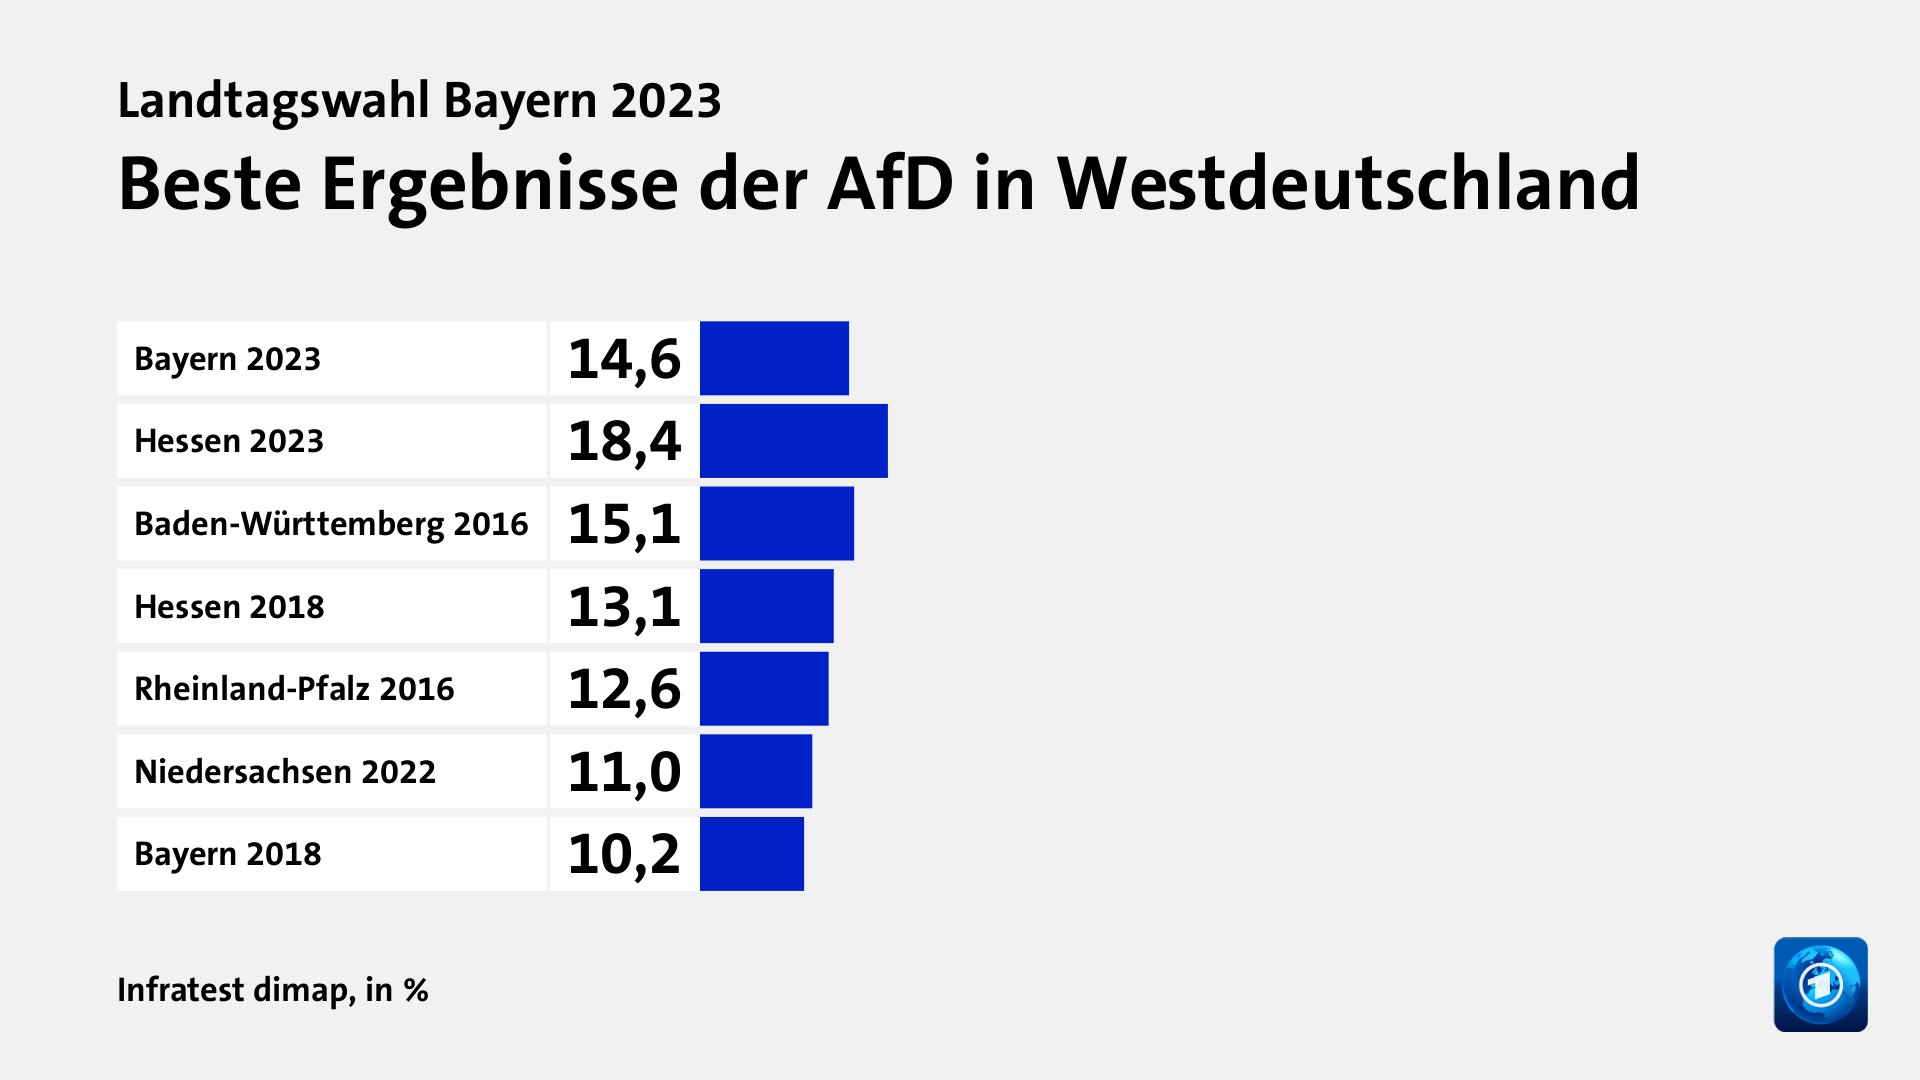 Beste Ergebnisse der AfD in Westdeutschland, in %: Bayern 2023 14, Hessen 2023 18, Baden-Württemberg 2016 15, Hessen 2018 13, Rheinland-Pfalz 2016 12, Niedersachsen 2022 11, Bayern 2018 10, Quelle: Infratest dimap